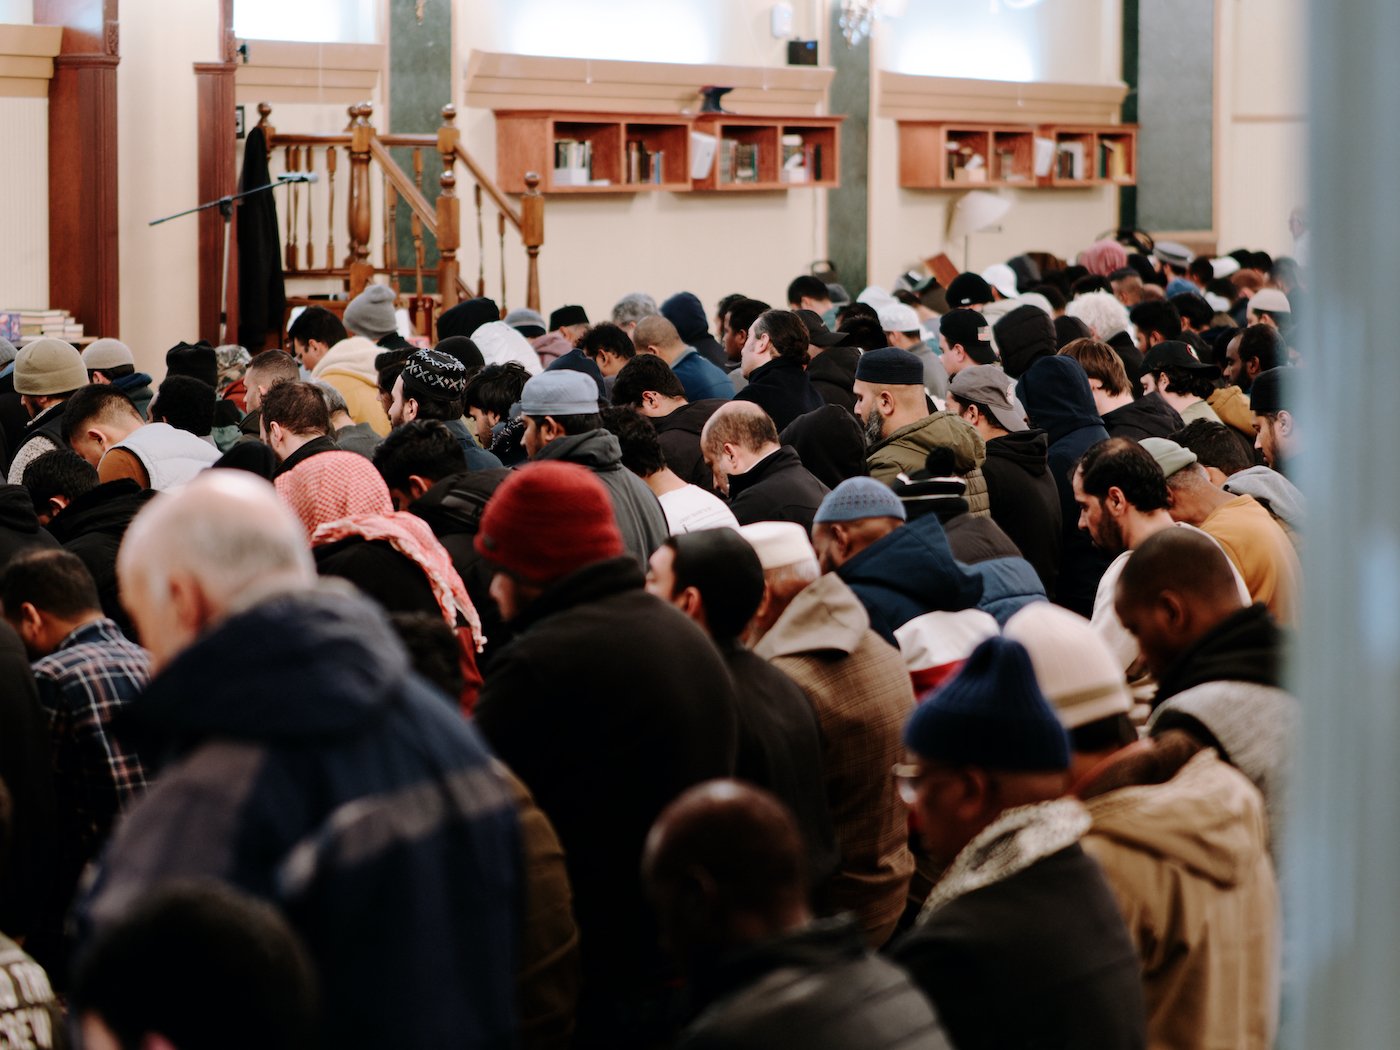 Rows of Muslim men kneel during prayers